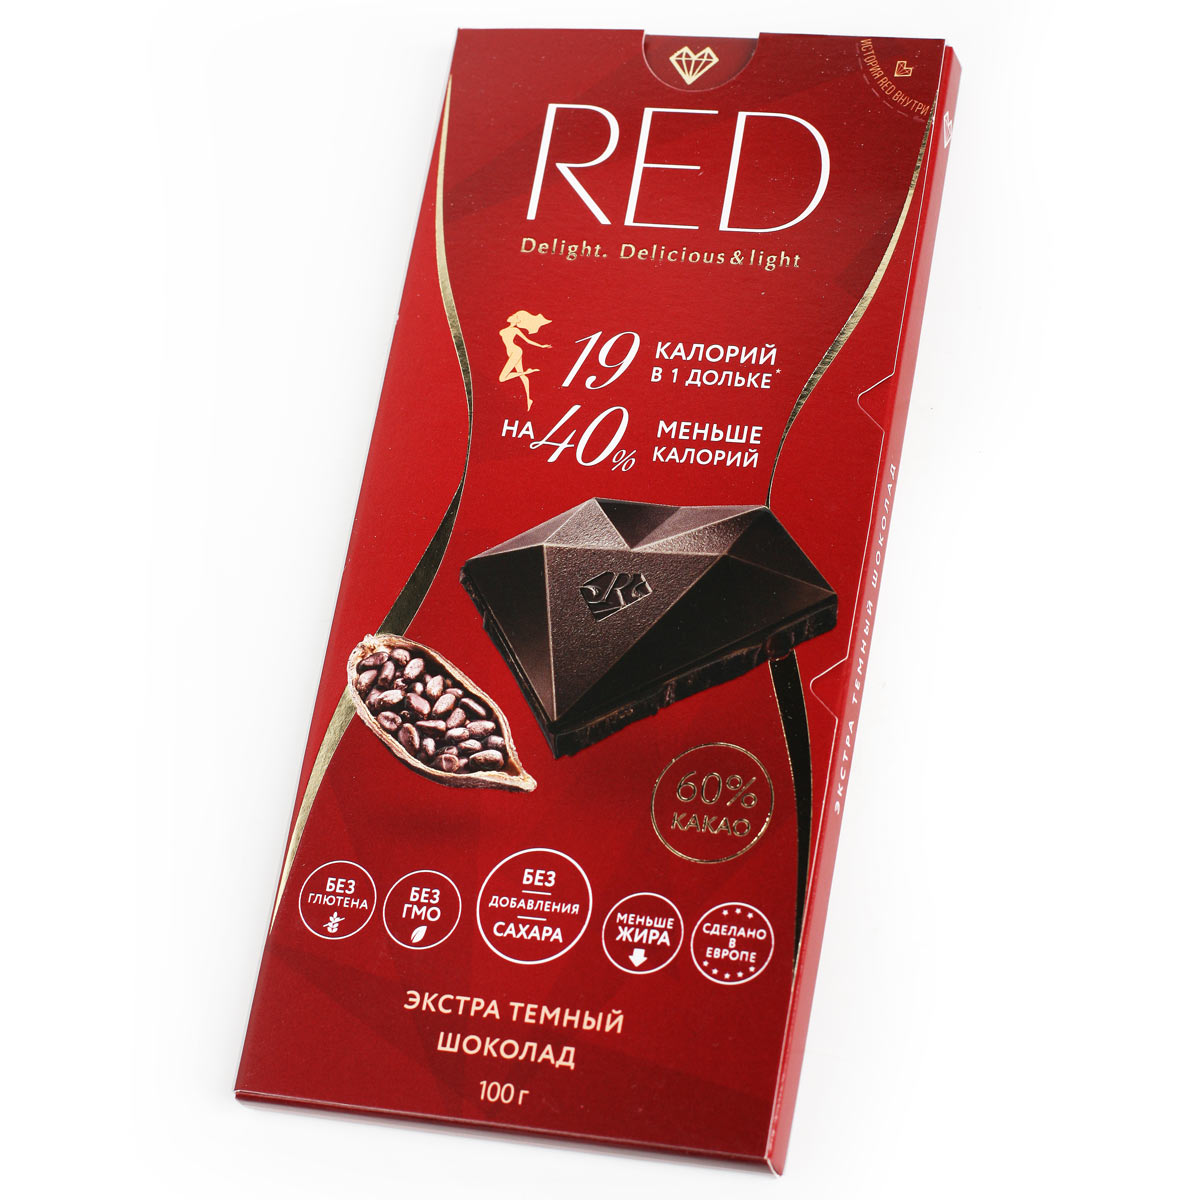 RED шоколад РЕД темный экстра 60% 100г